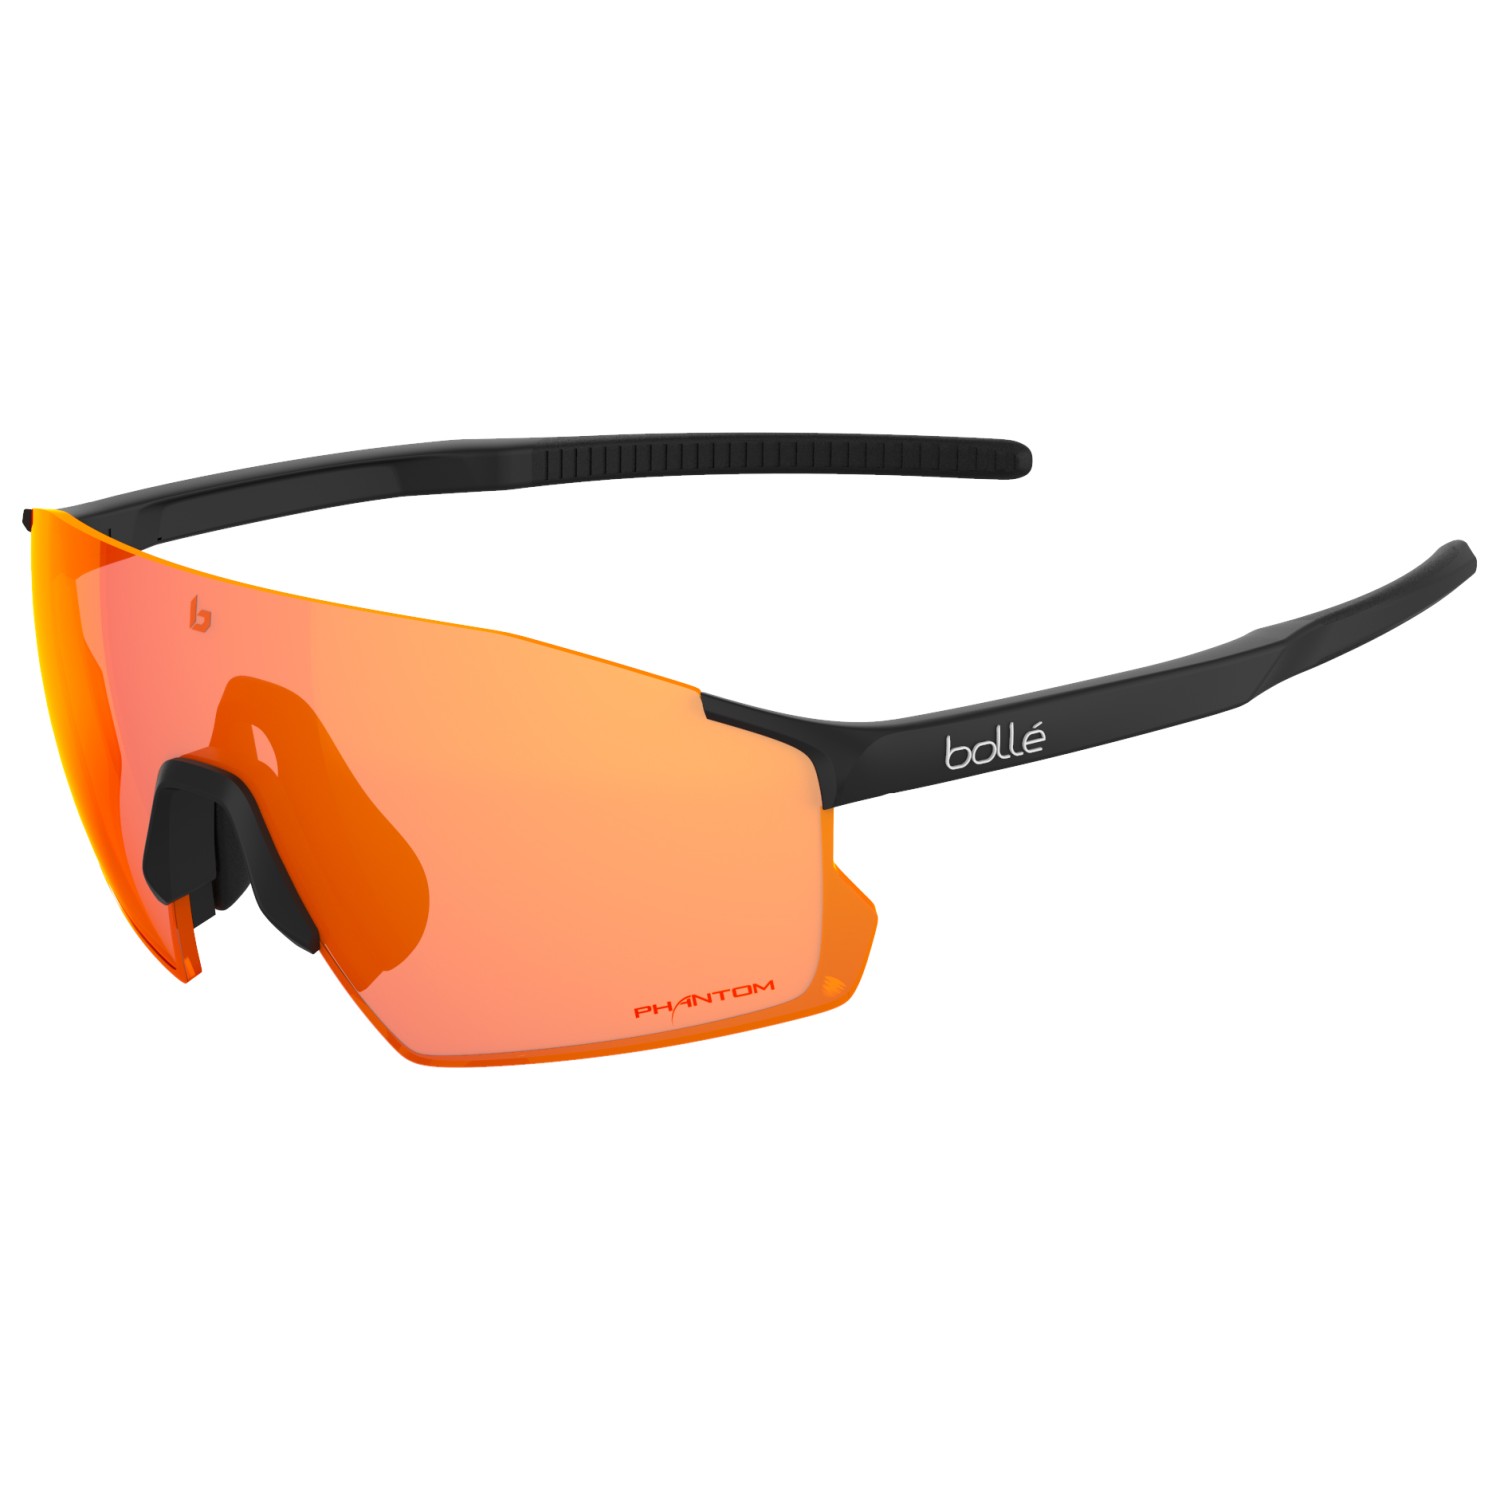 Велосипедные очки Bollé Icarus Cat 2 3 VLT 35 15%, цвет Black Matte велосипедные очки shimano equinox 3 цвет оправы черный